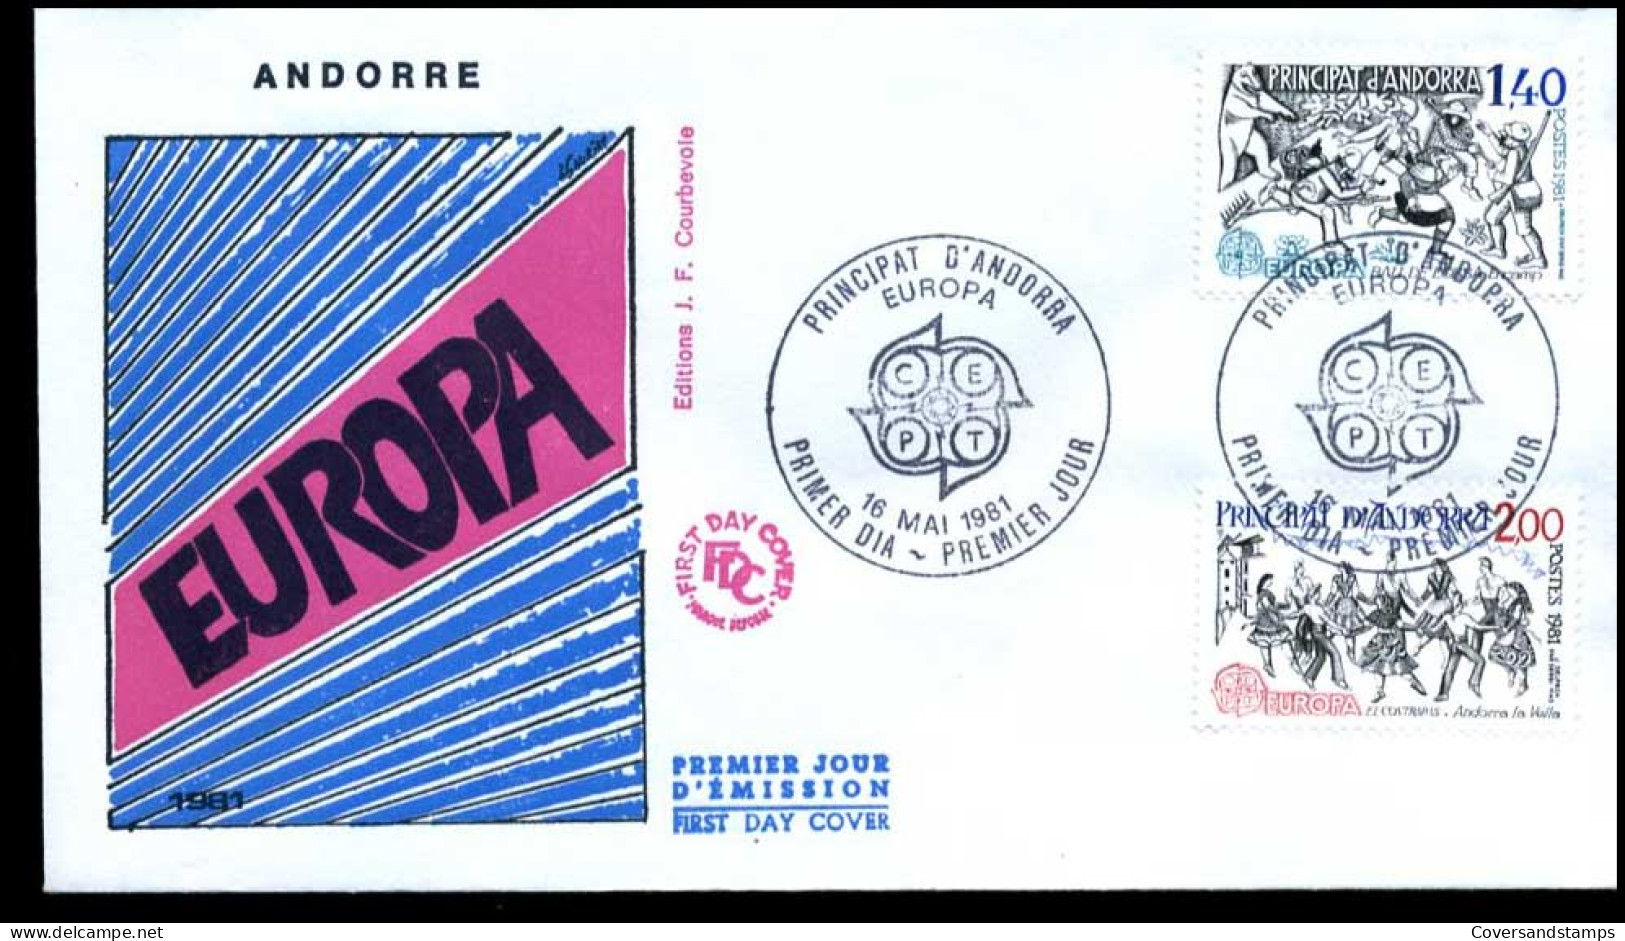  Frans Andorra - FDC - Europa CEPT 1981 - 1981